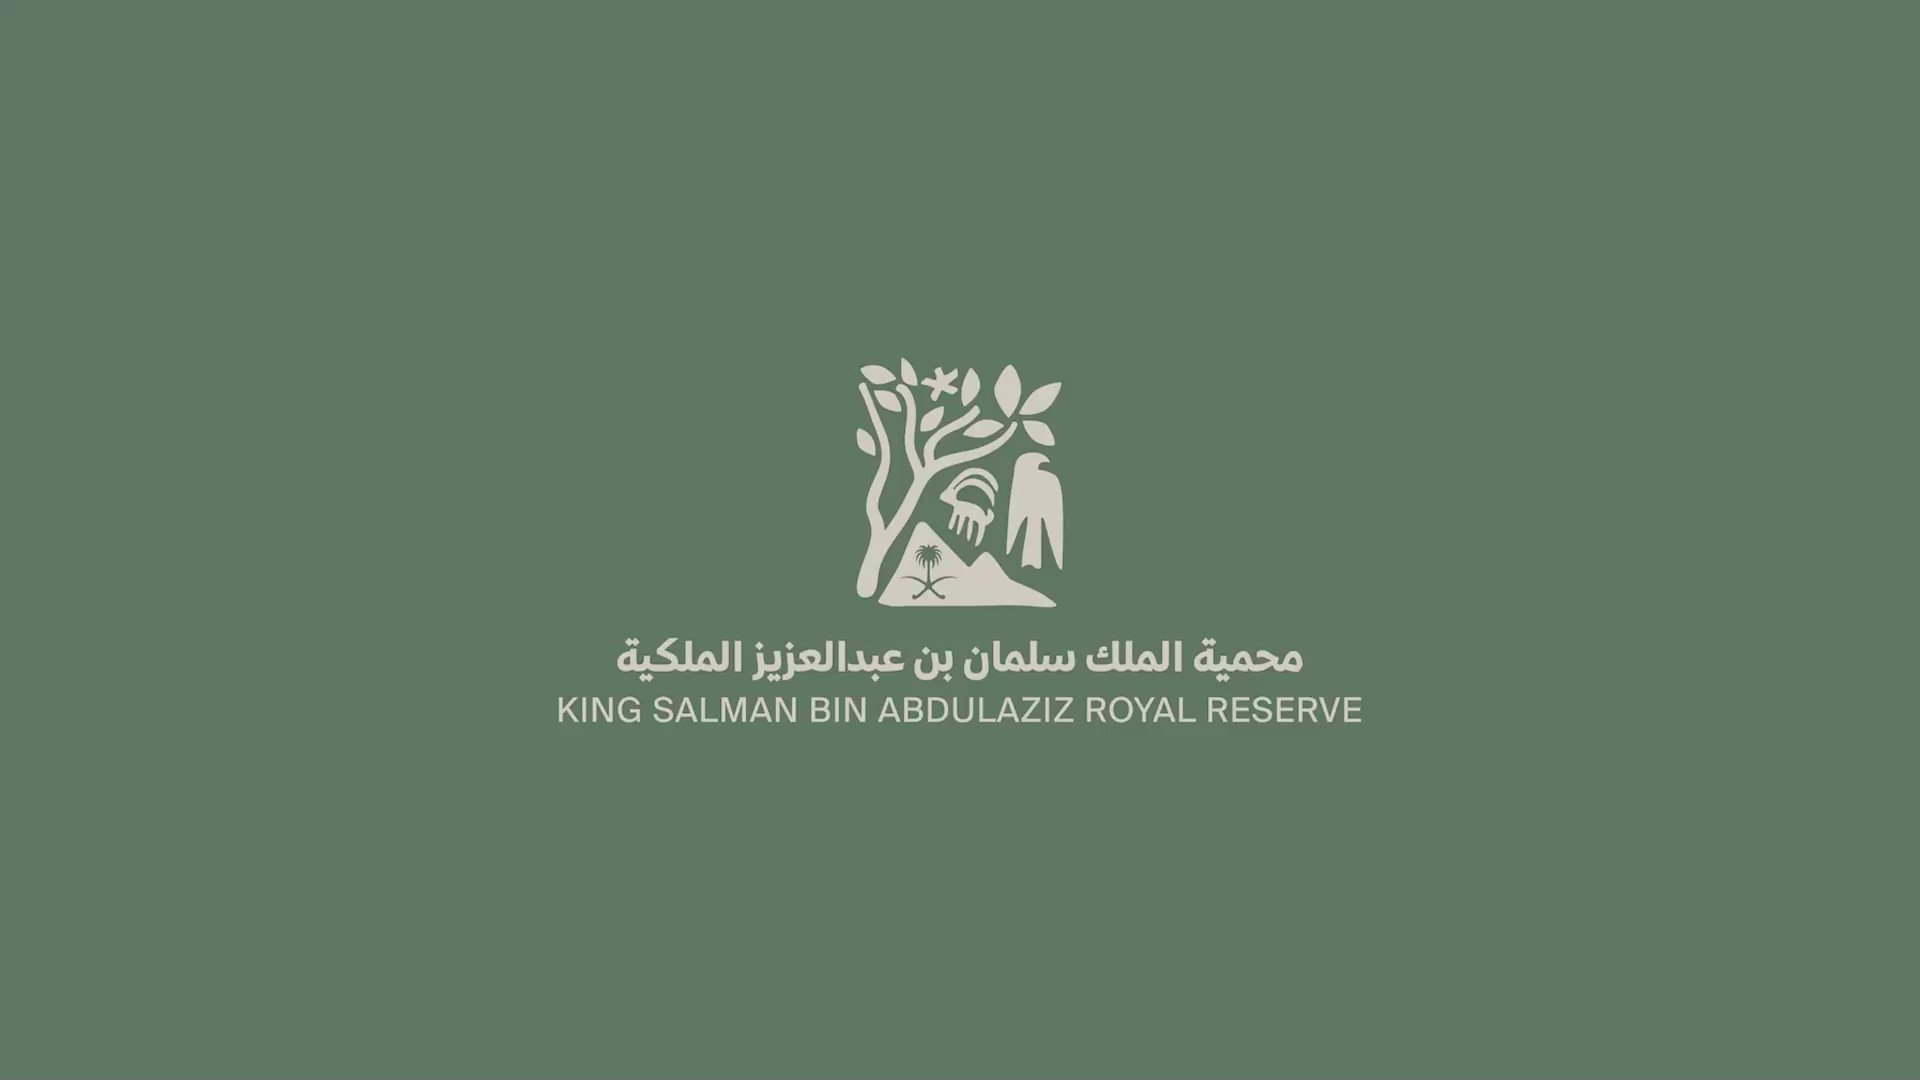  هيئة تطوير محمية الملك سلمان بن عبدالعزيز الملكية تعلن عن توفر فرص وظيفية شاغرة 